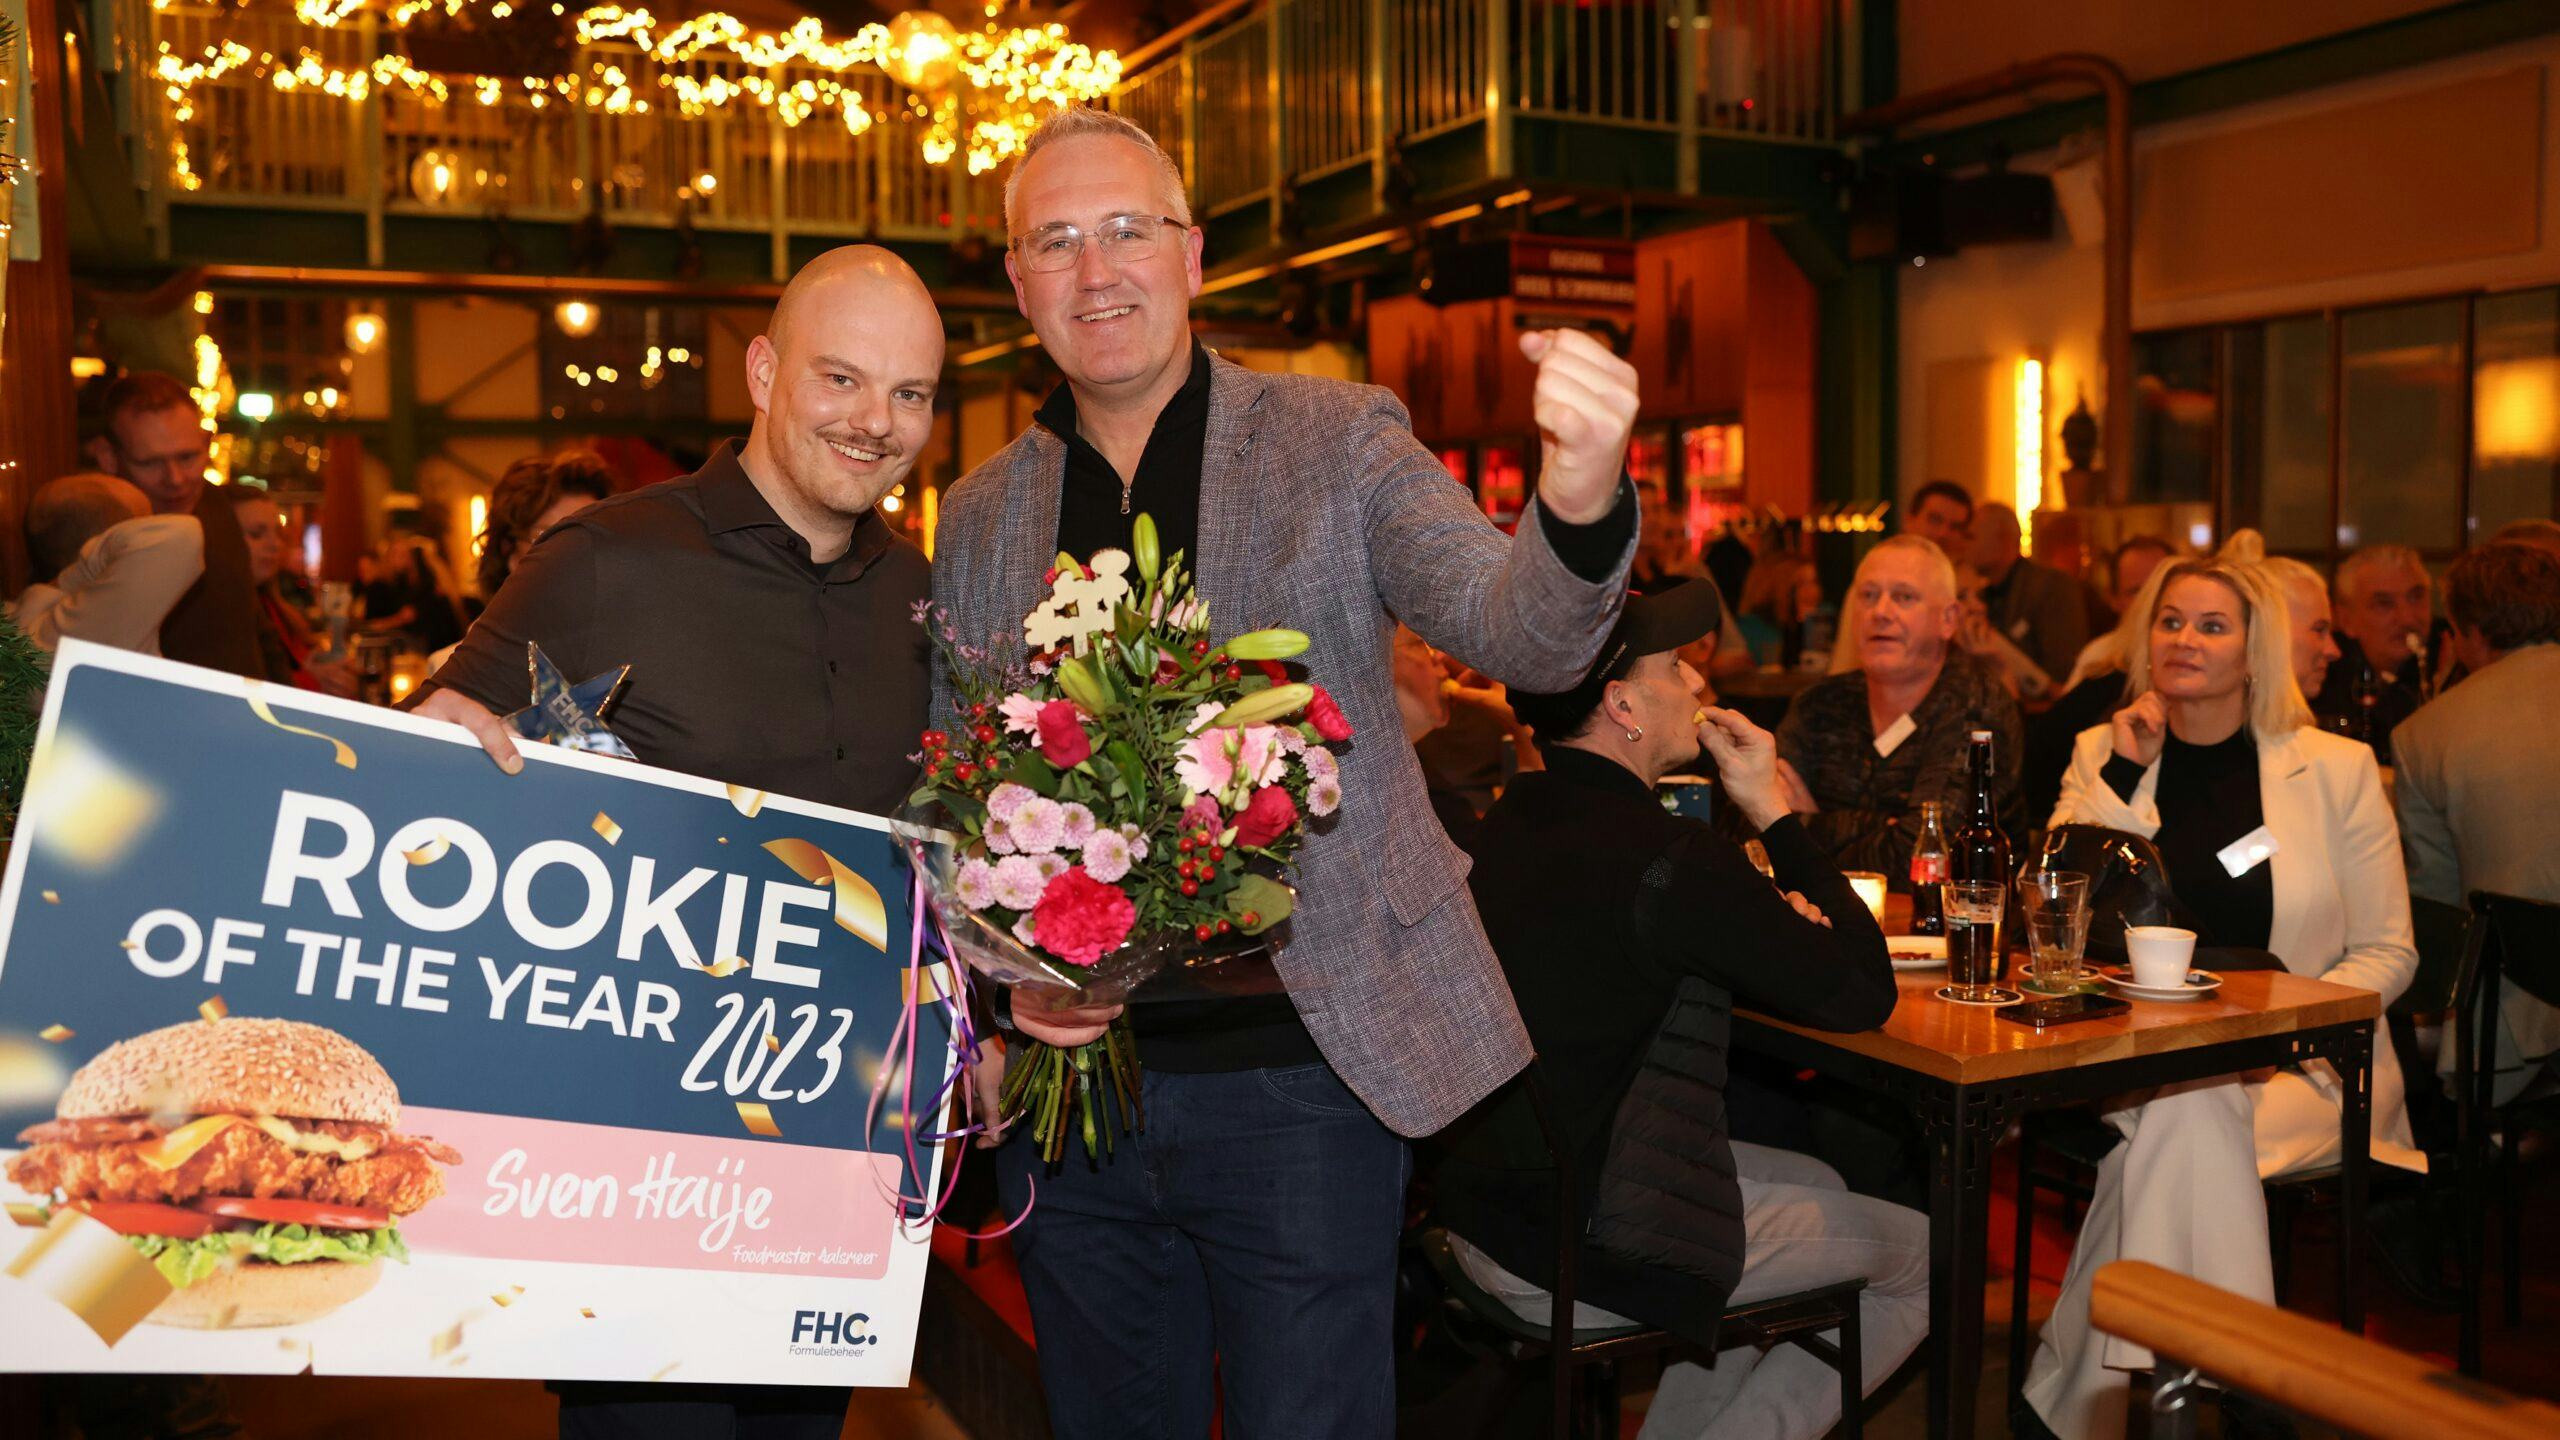 De Rookie of the year award was voor Sven Haije van Foodmaster Aalsmeer. 